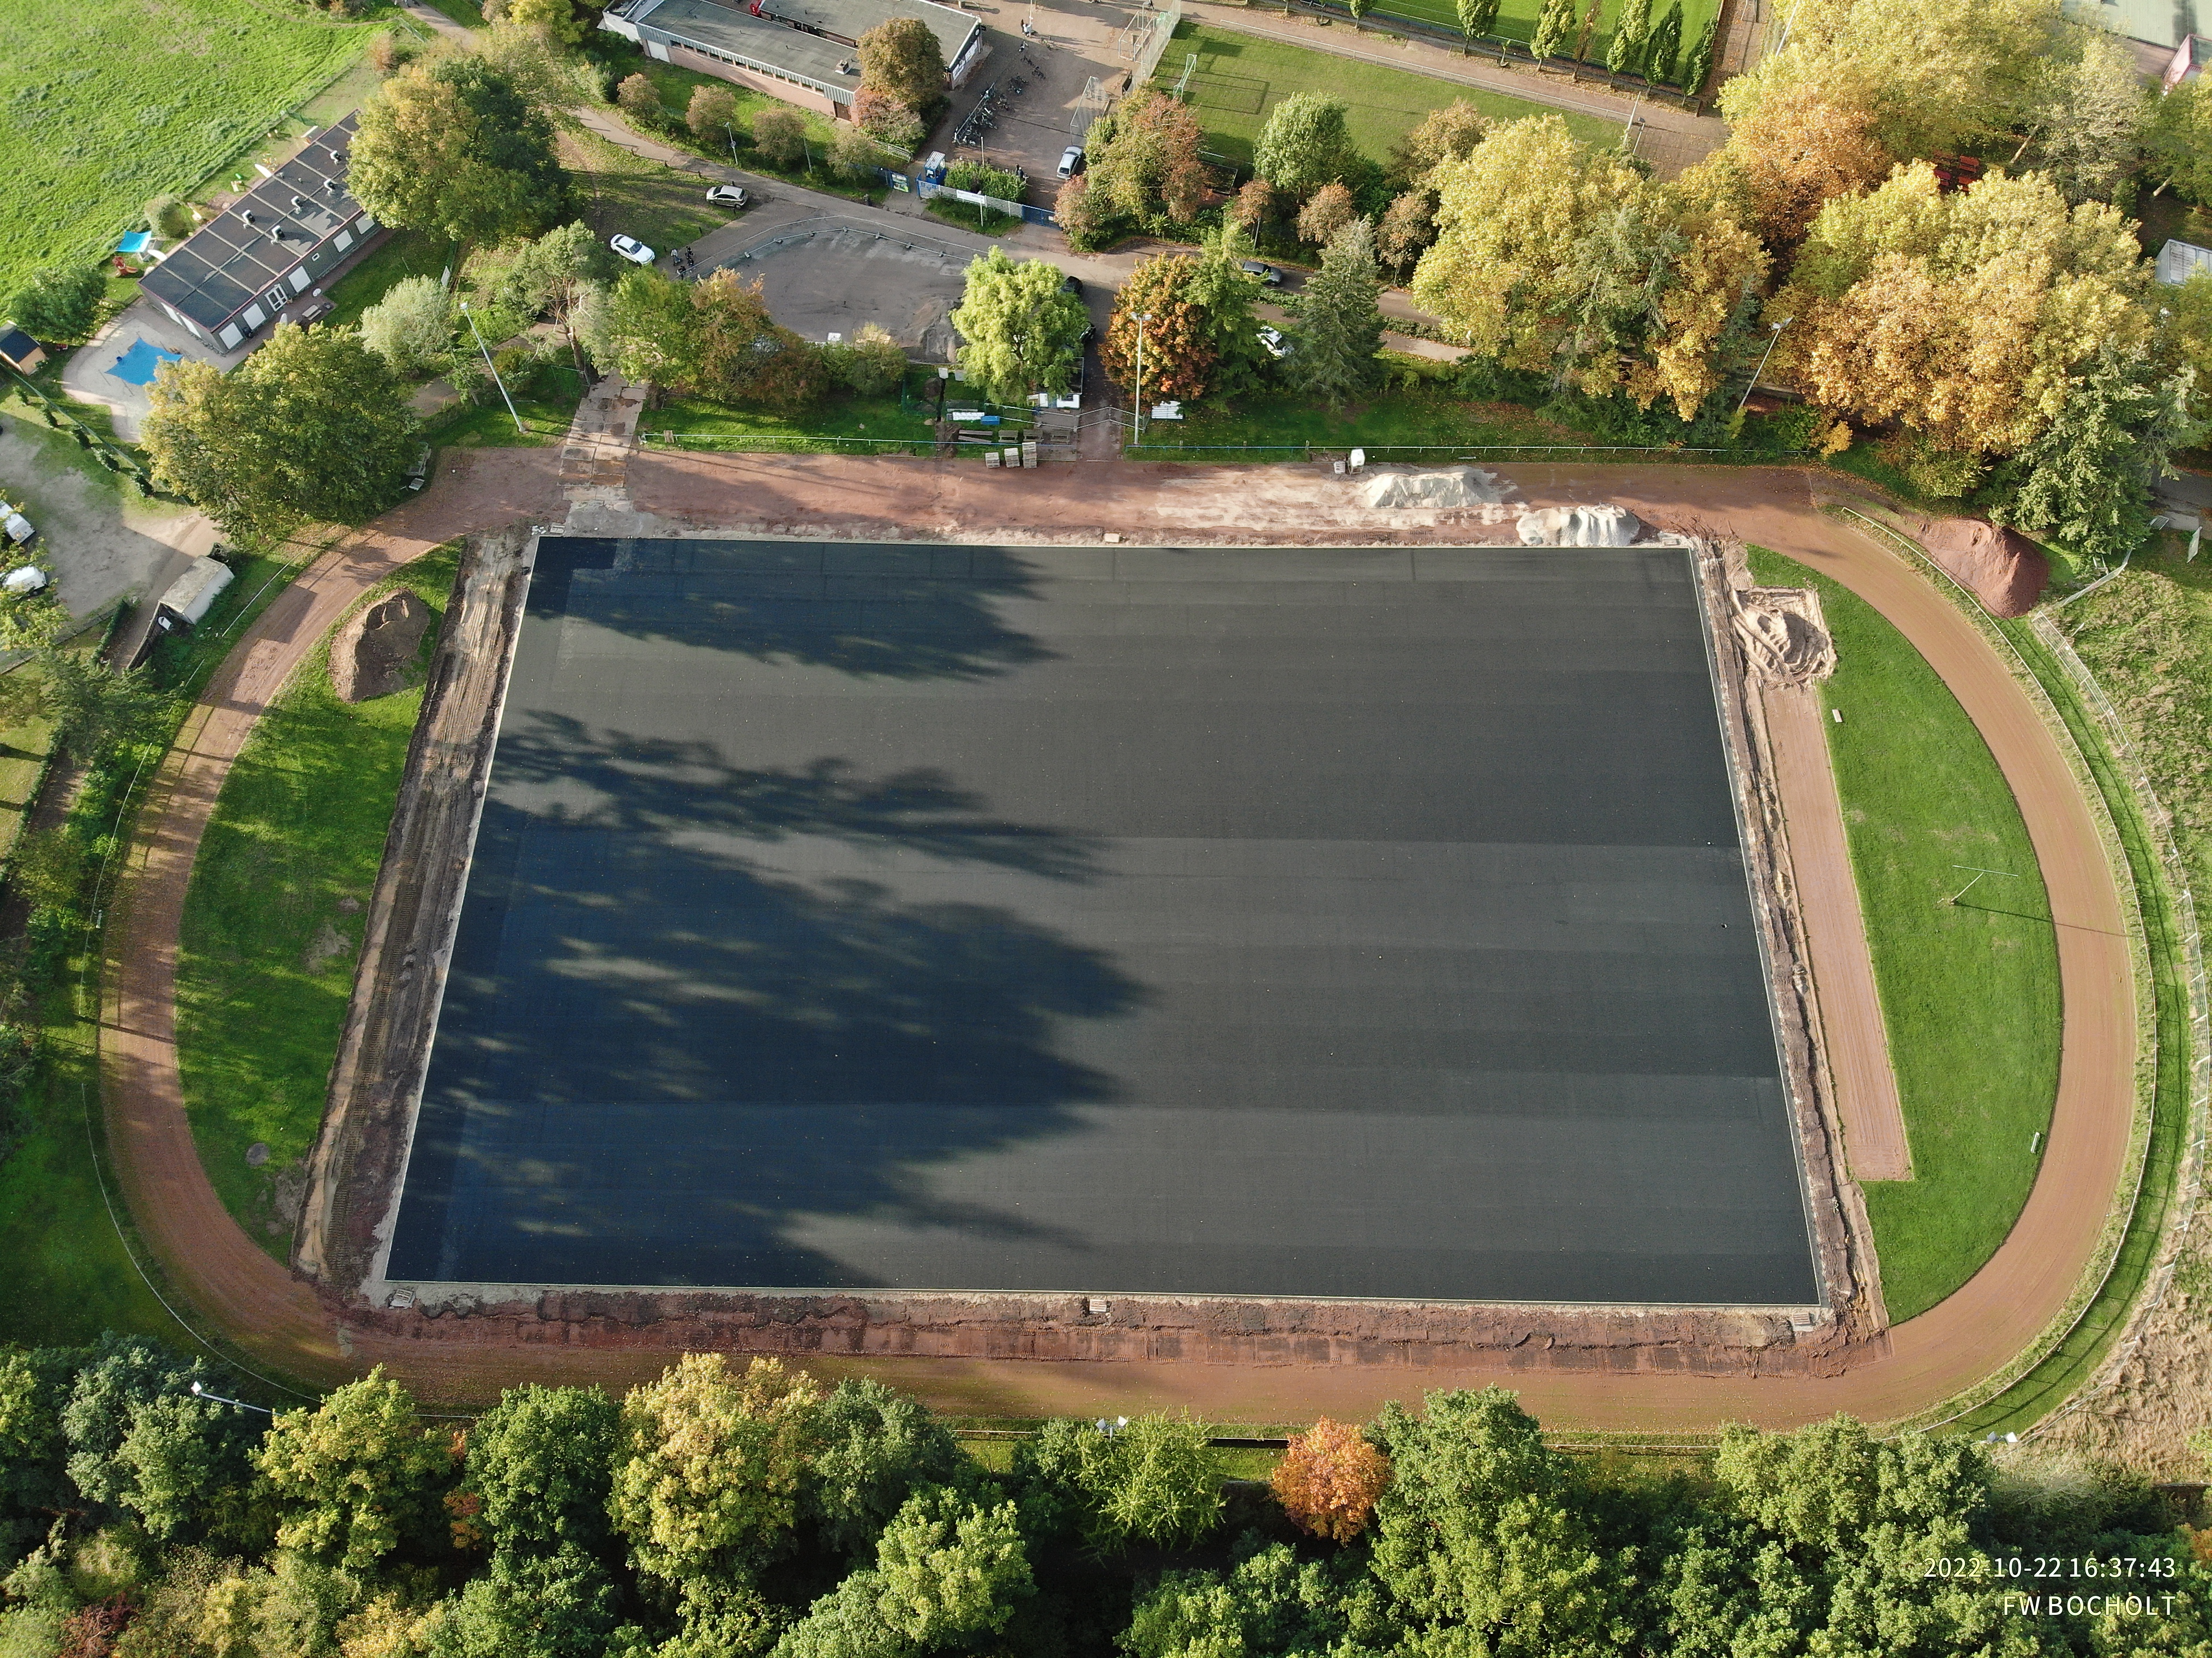 Die Luftaufnahme zeigt die Sportanlage von oben. Das Fußballfeld ist mit einer grauen Schicht überzogen. Um das Feld zieht sich eine ovale Laufbahn. Das Sportgelände ist von Bäumen gesäumt.